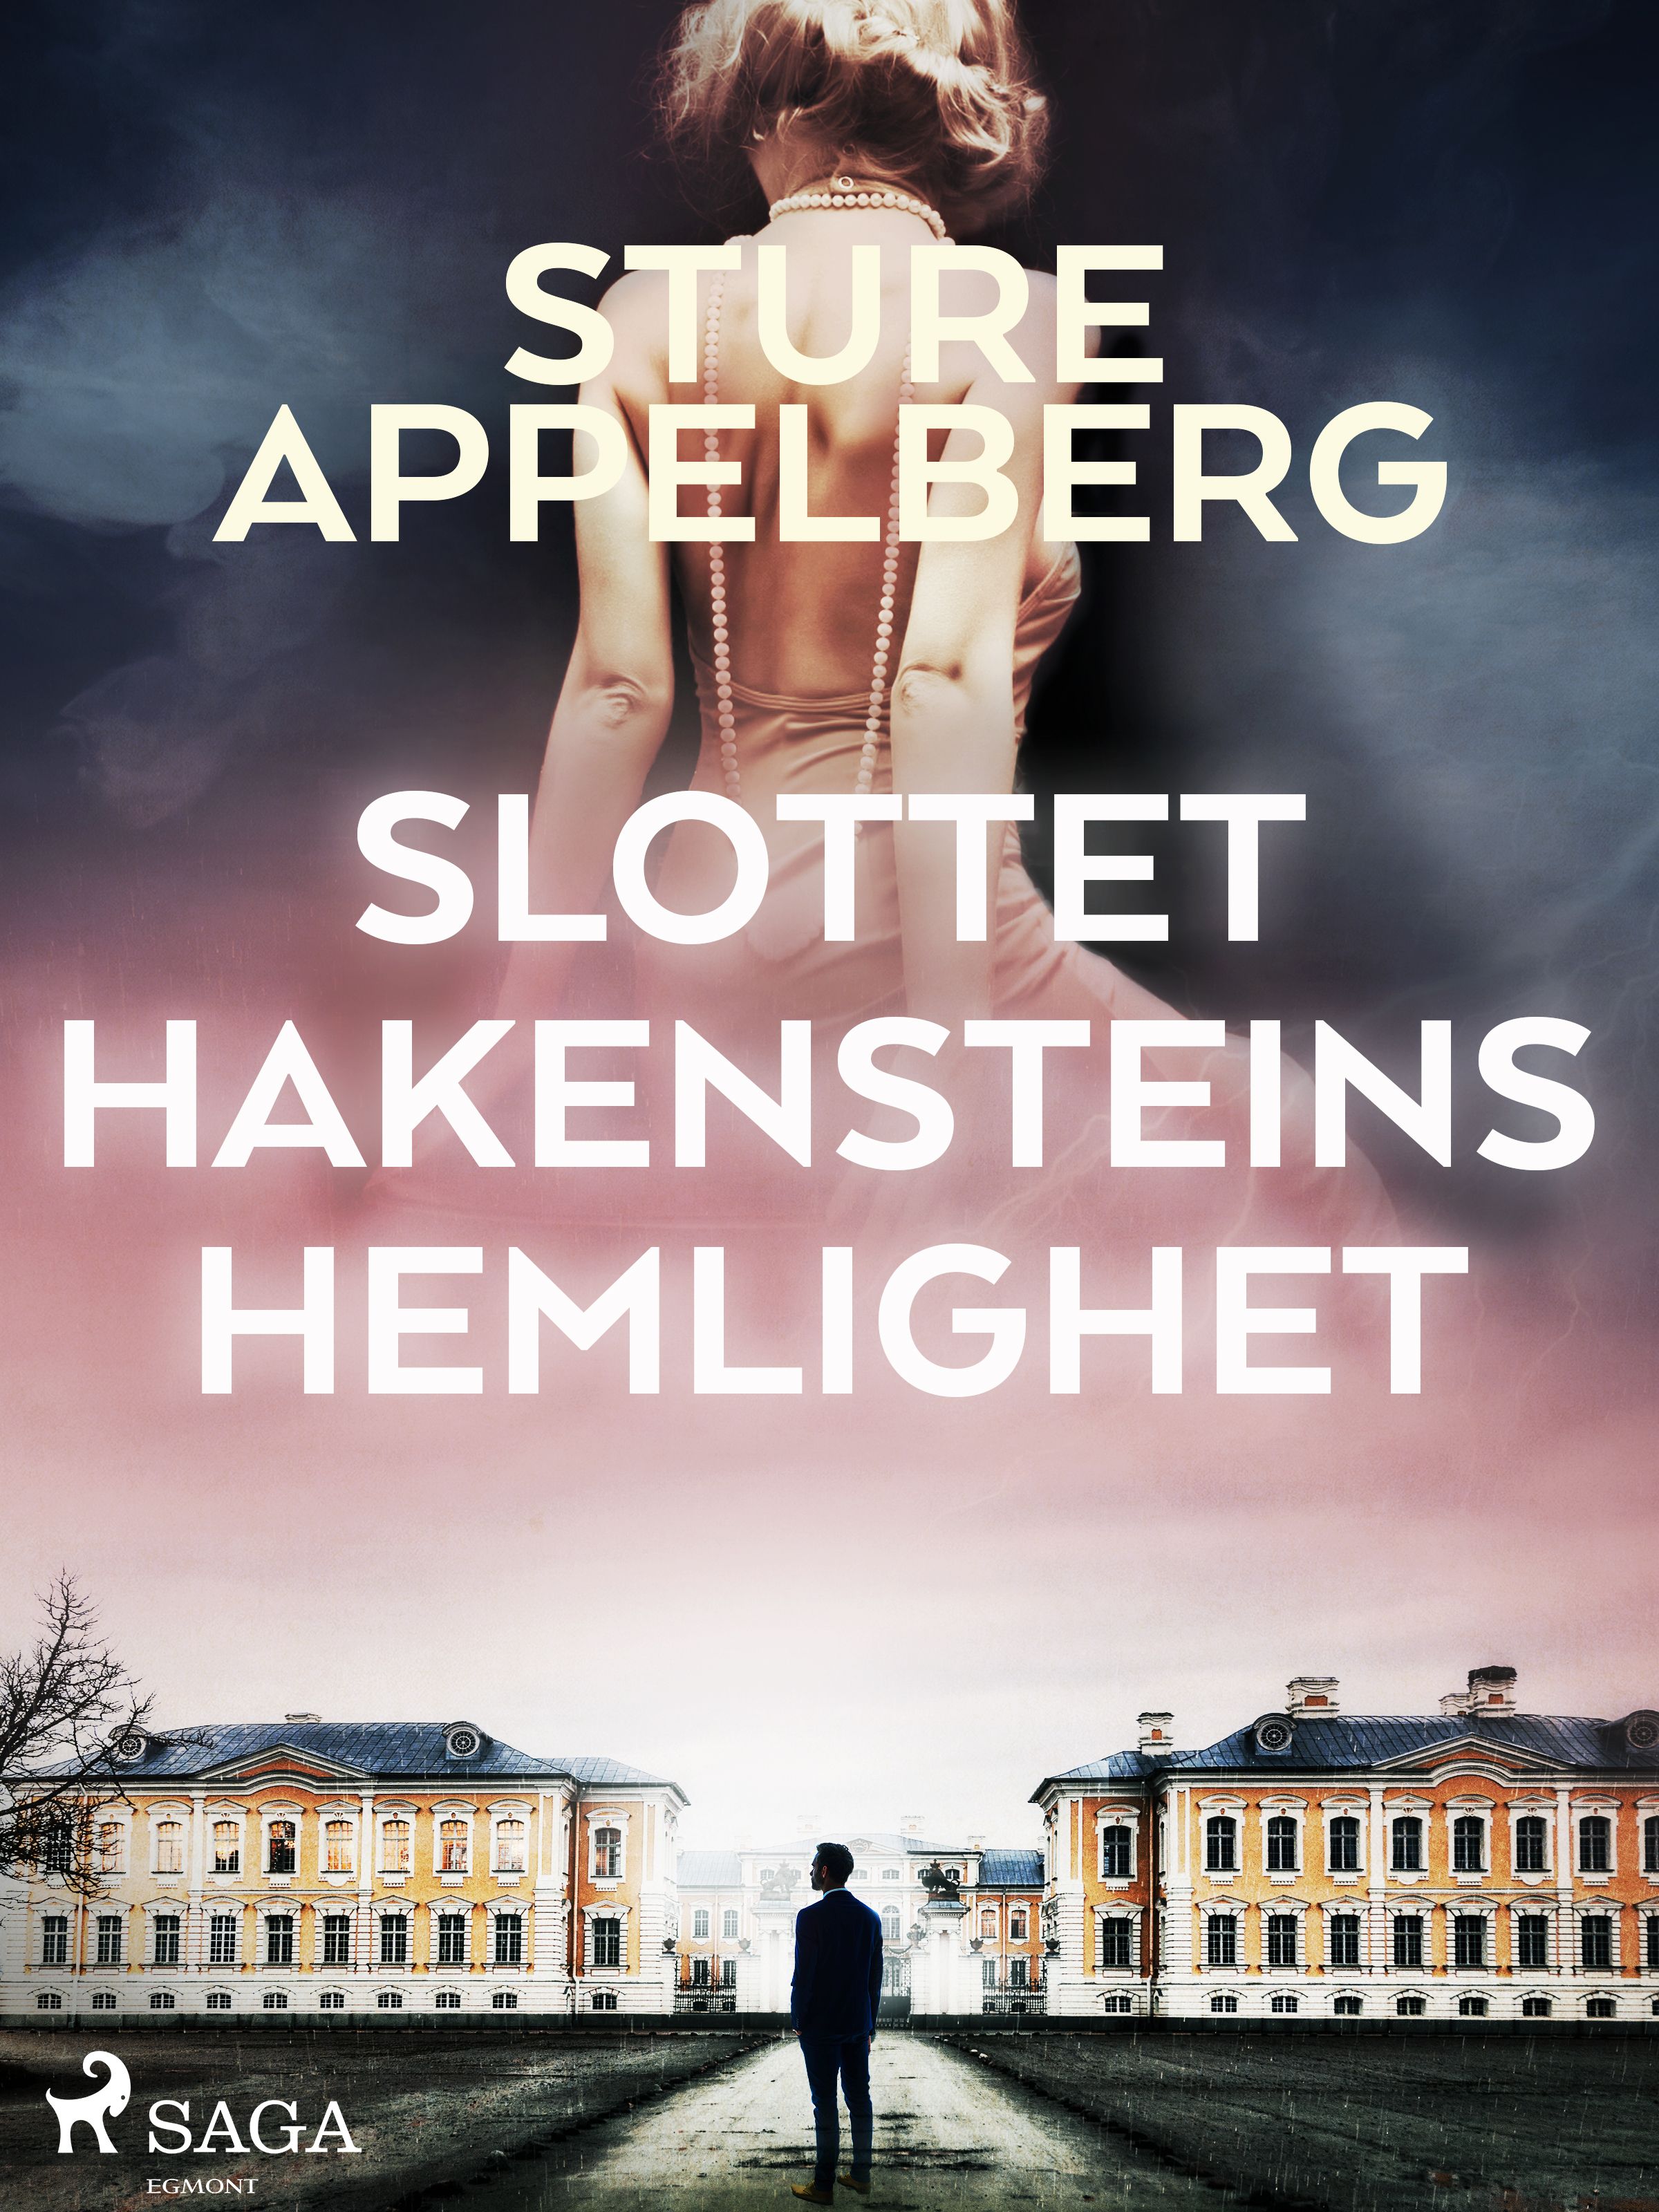 Slottet Hakensteins hemlighet, e-bok av Sture Appelberg